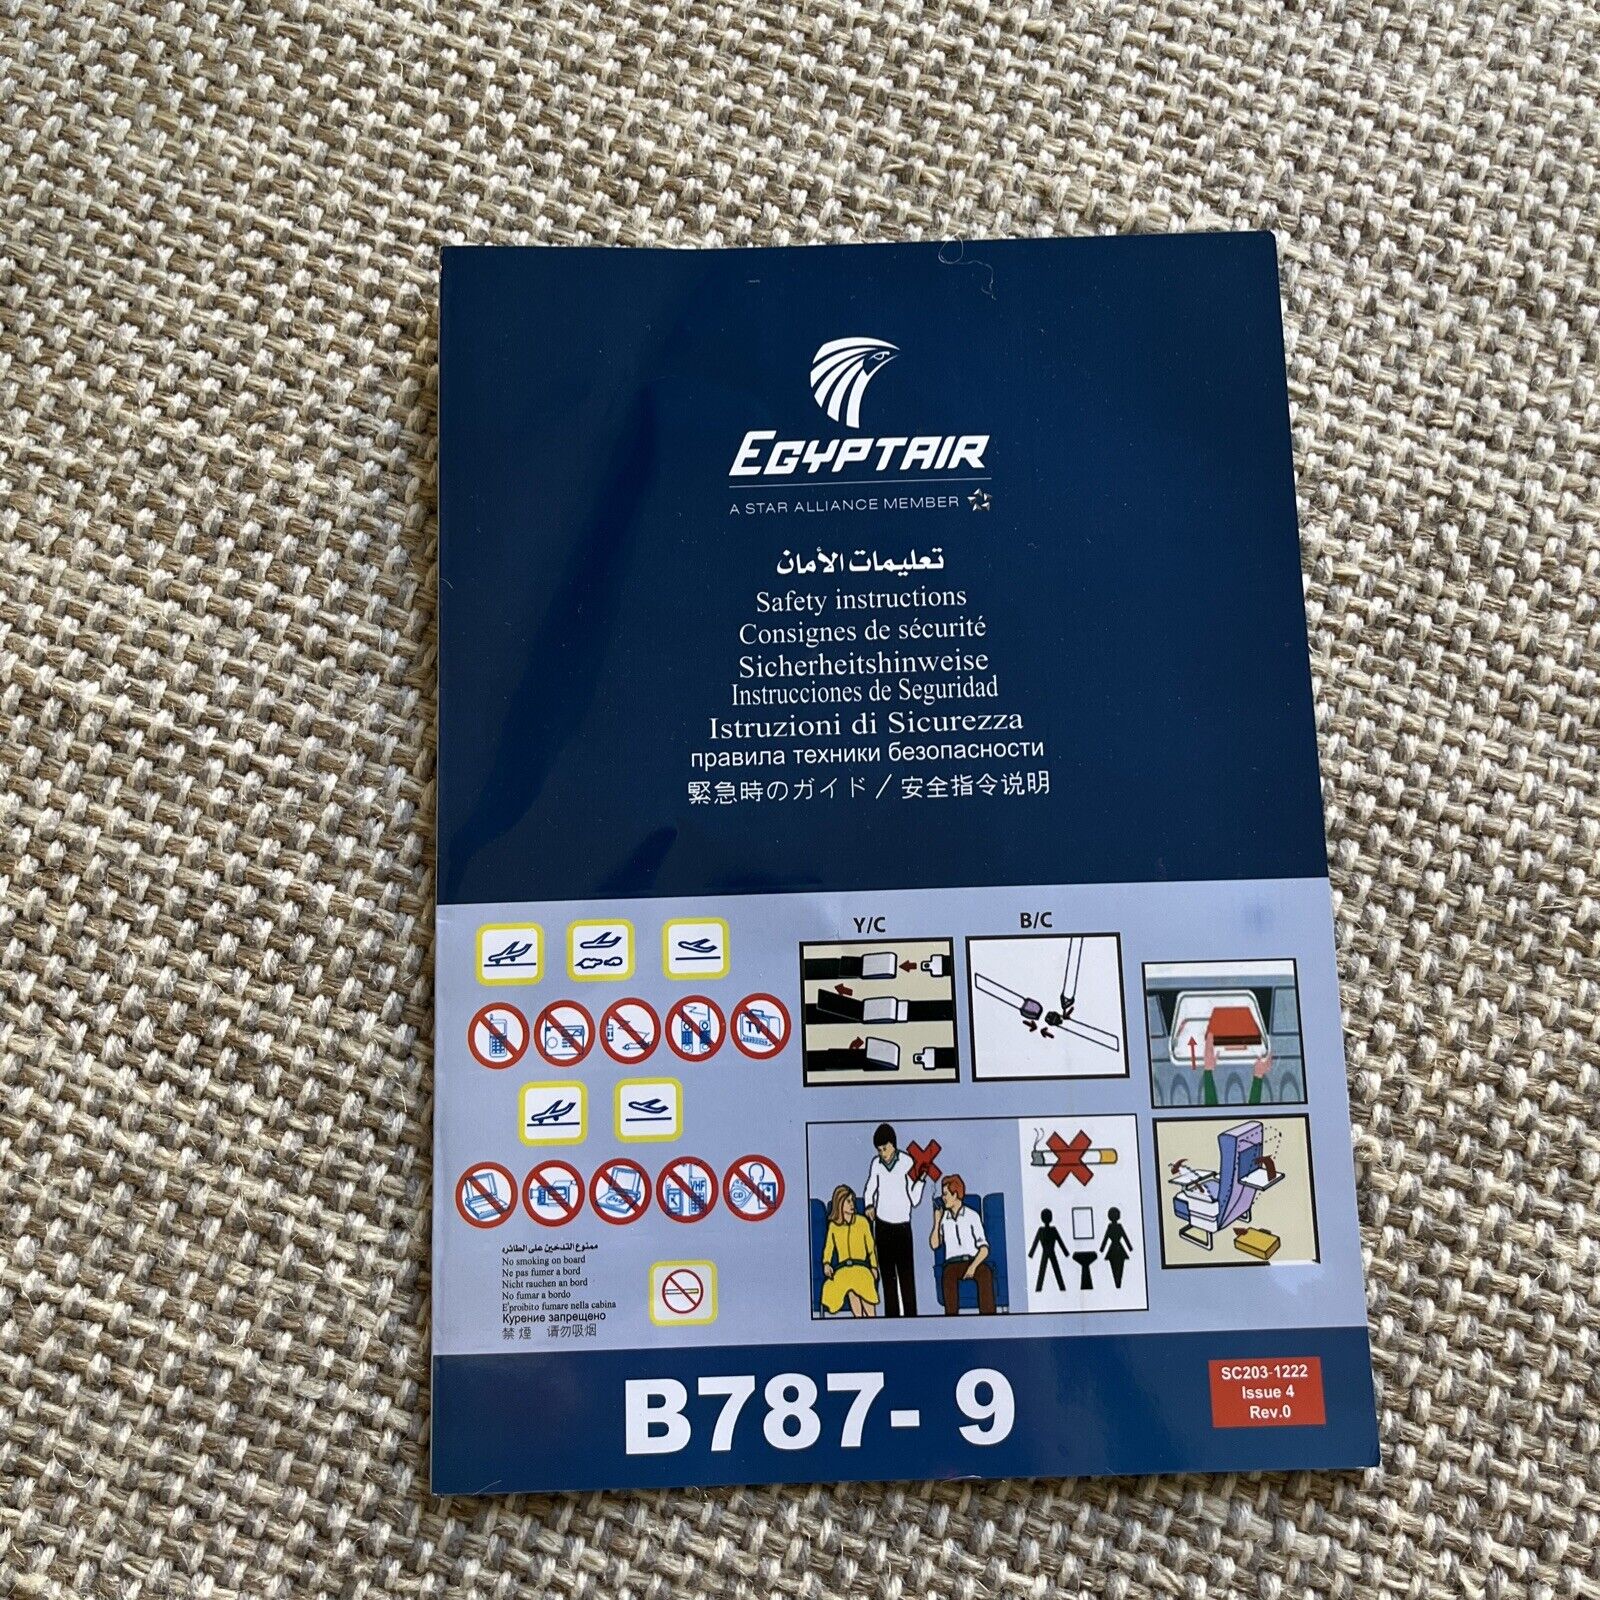 Egyptair 787-9 Safety Card